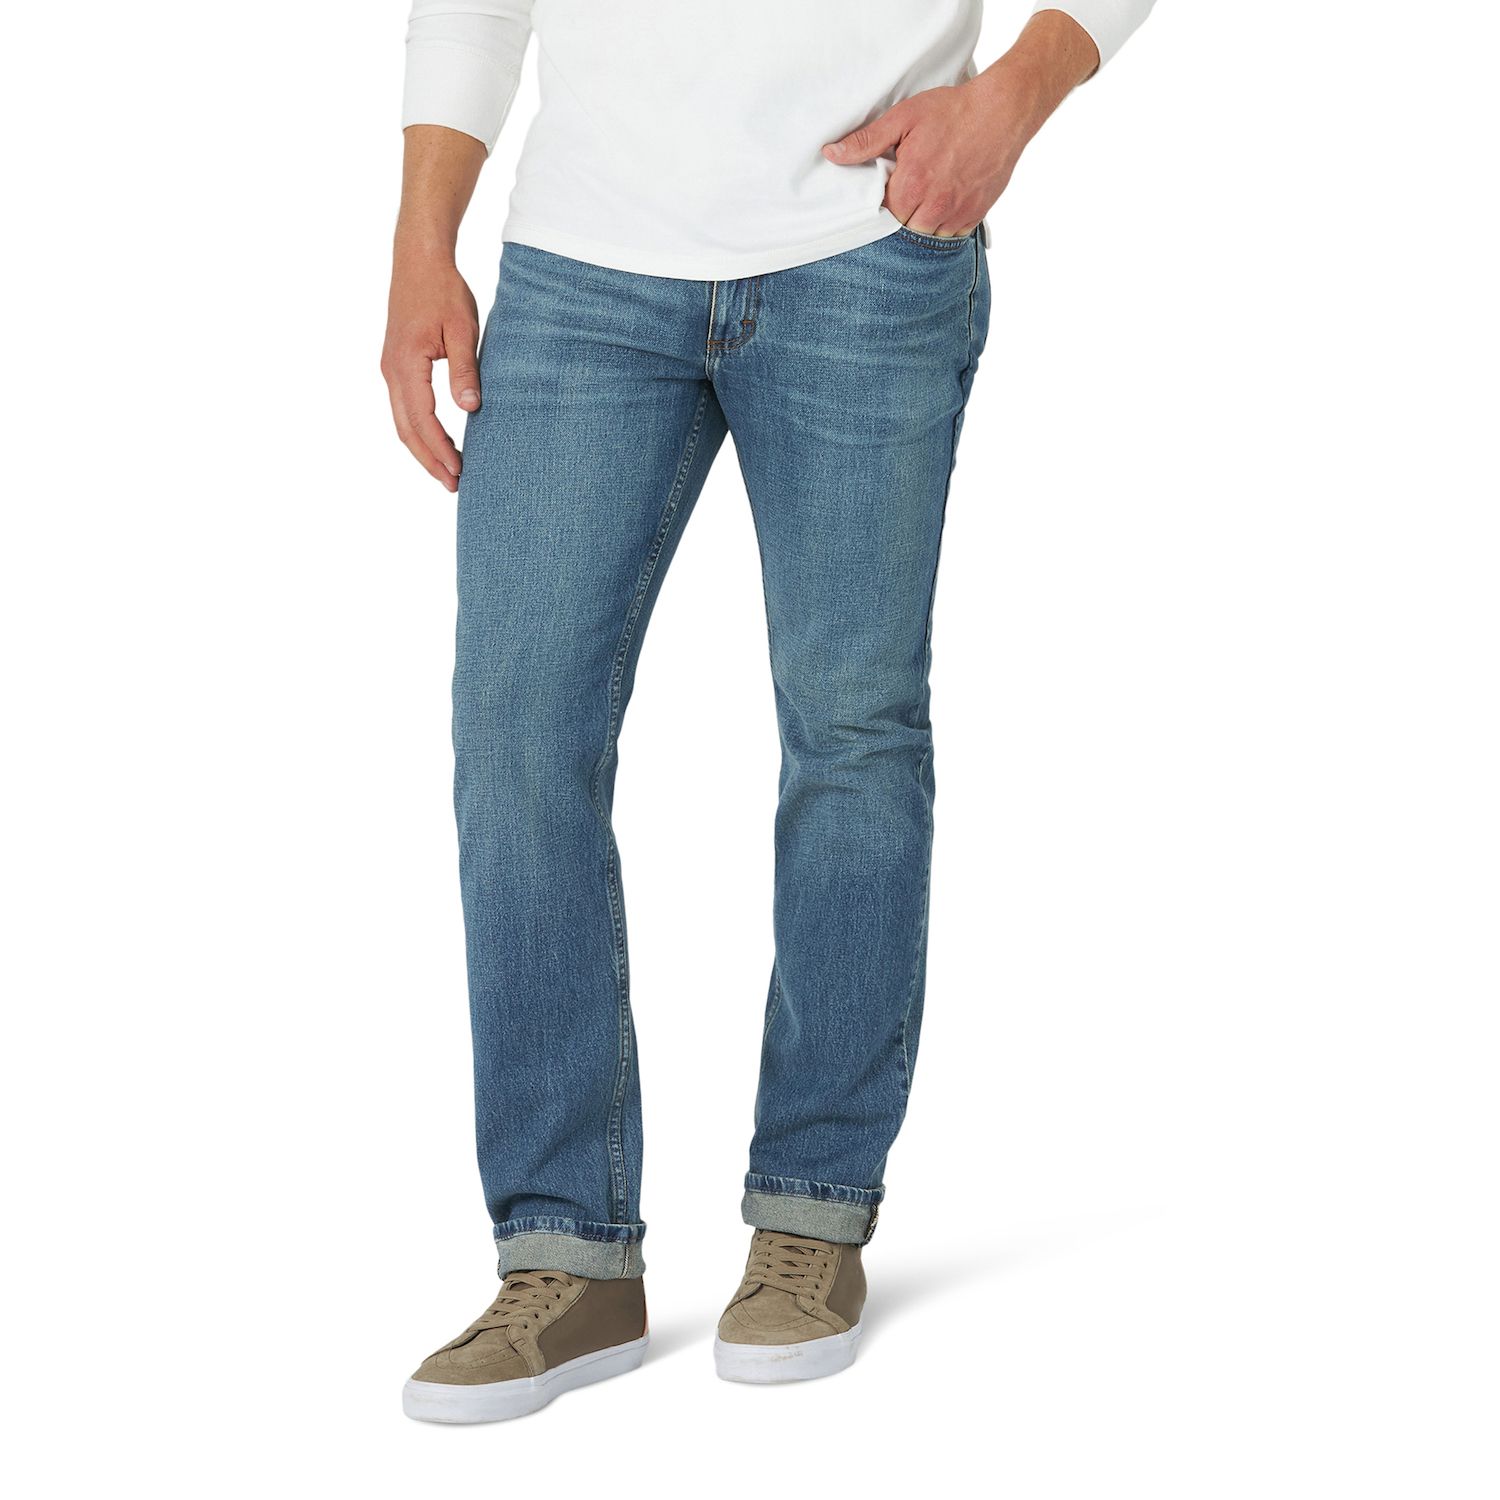 Image for Lee Men's Premium Flex Regular-Fit Jeans at Kohl's.